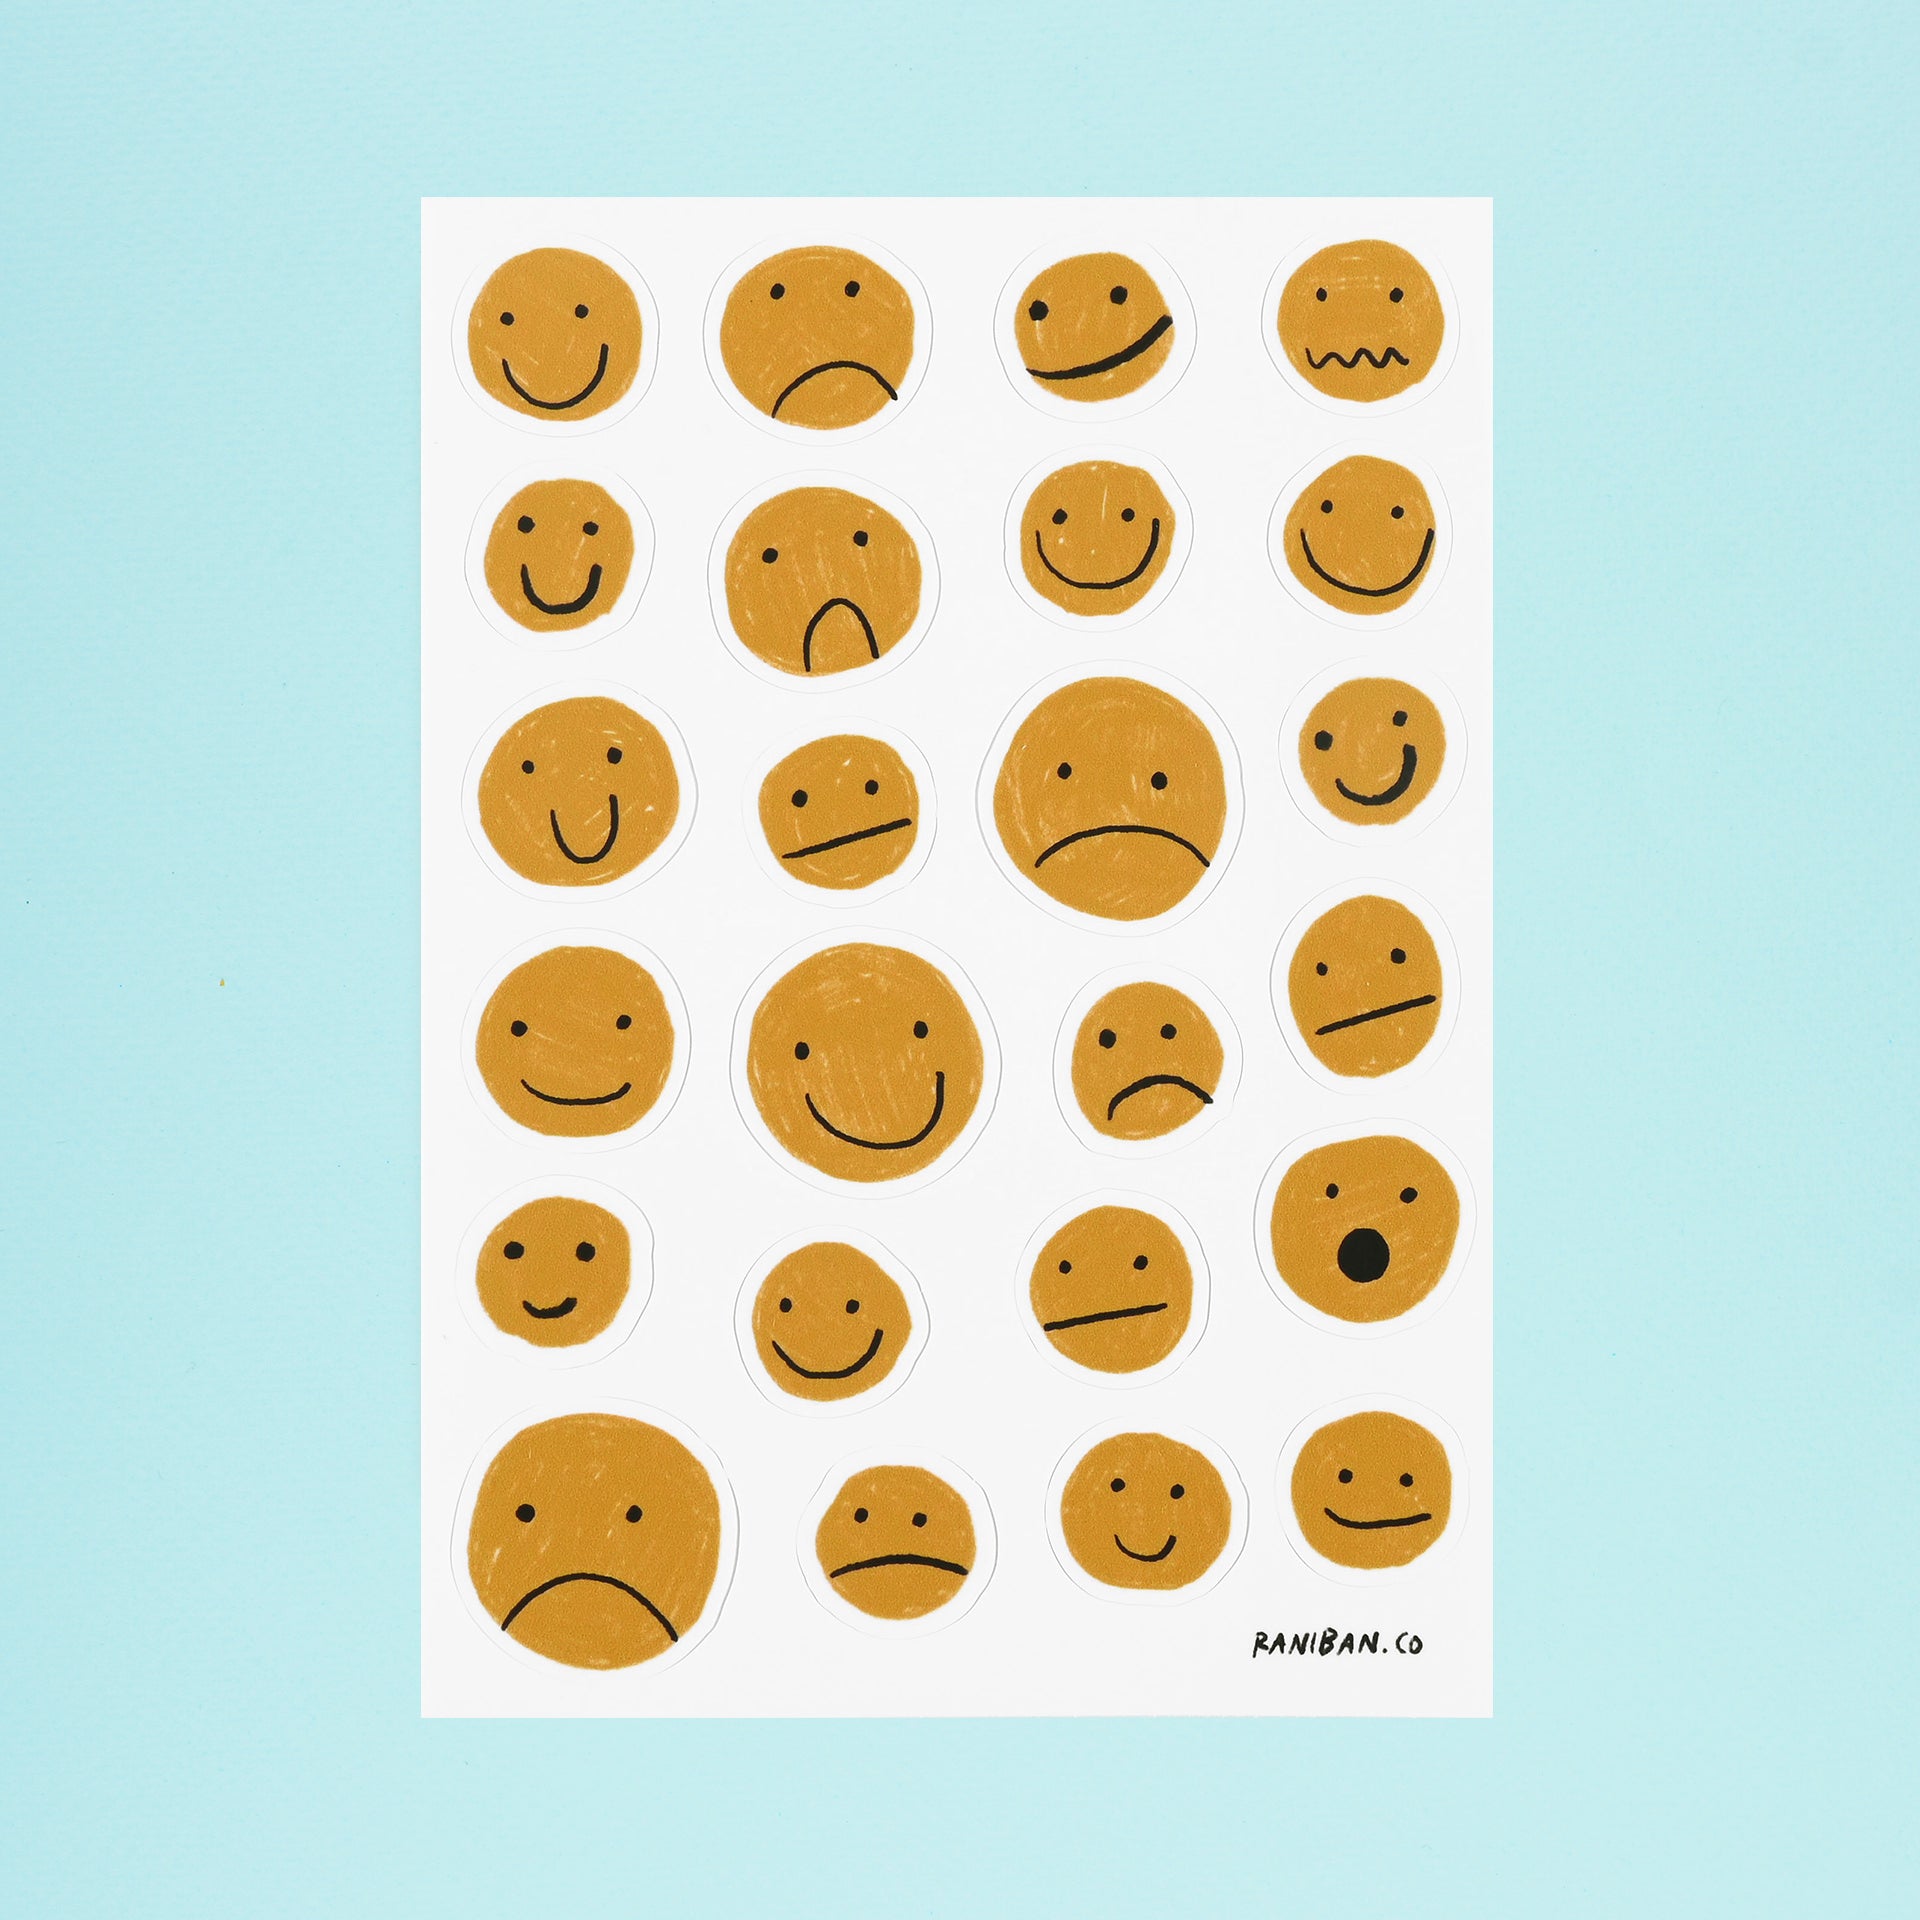 Rani Ban Co Mixed Feelings Sticker Sheet 